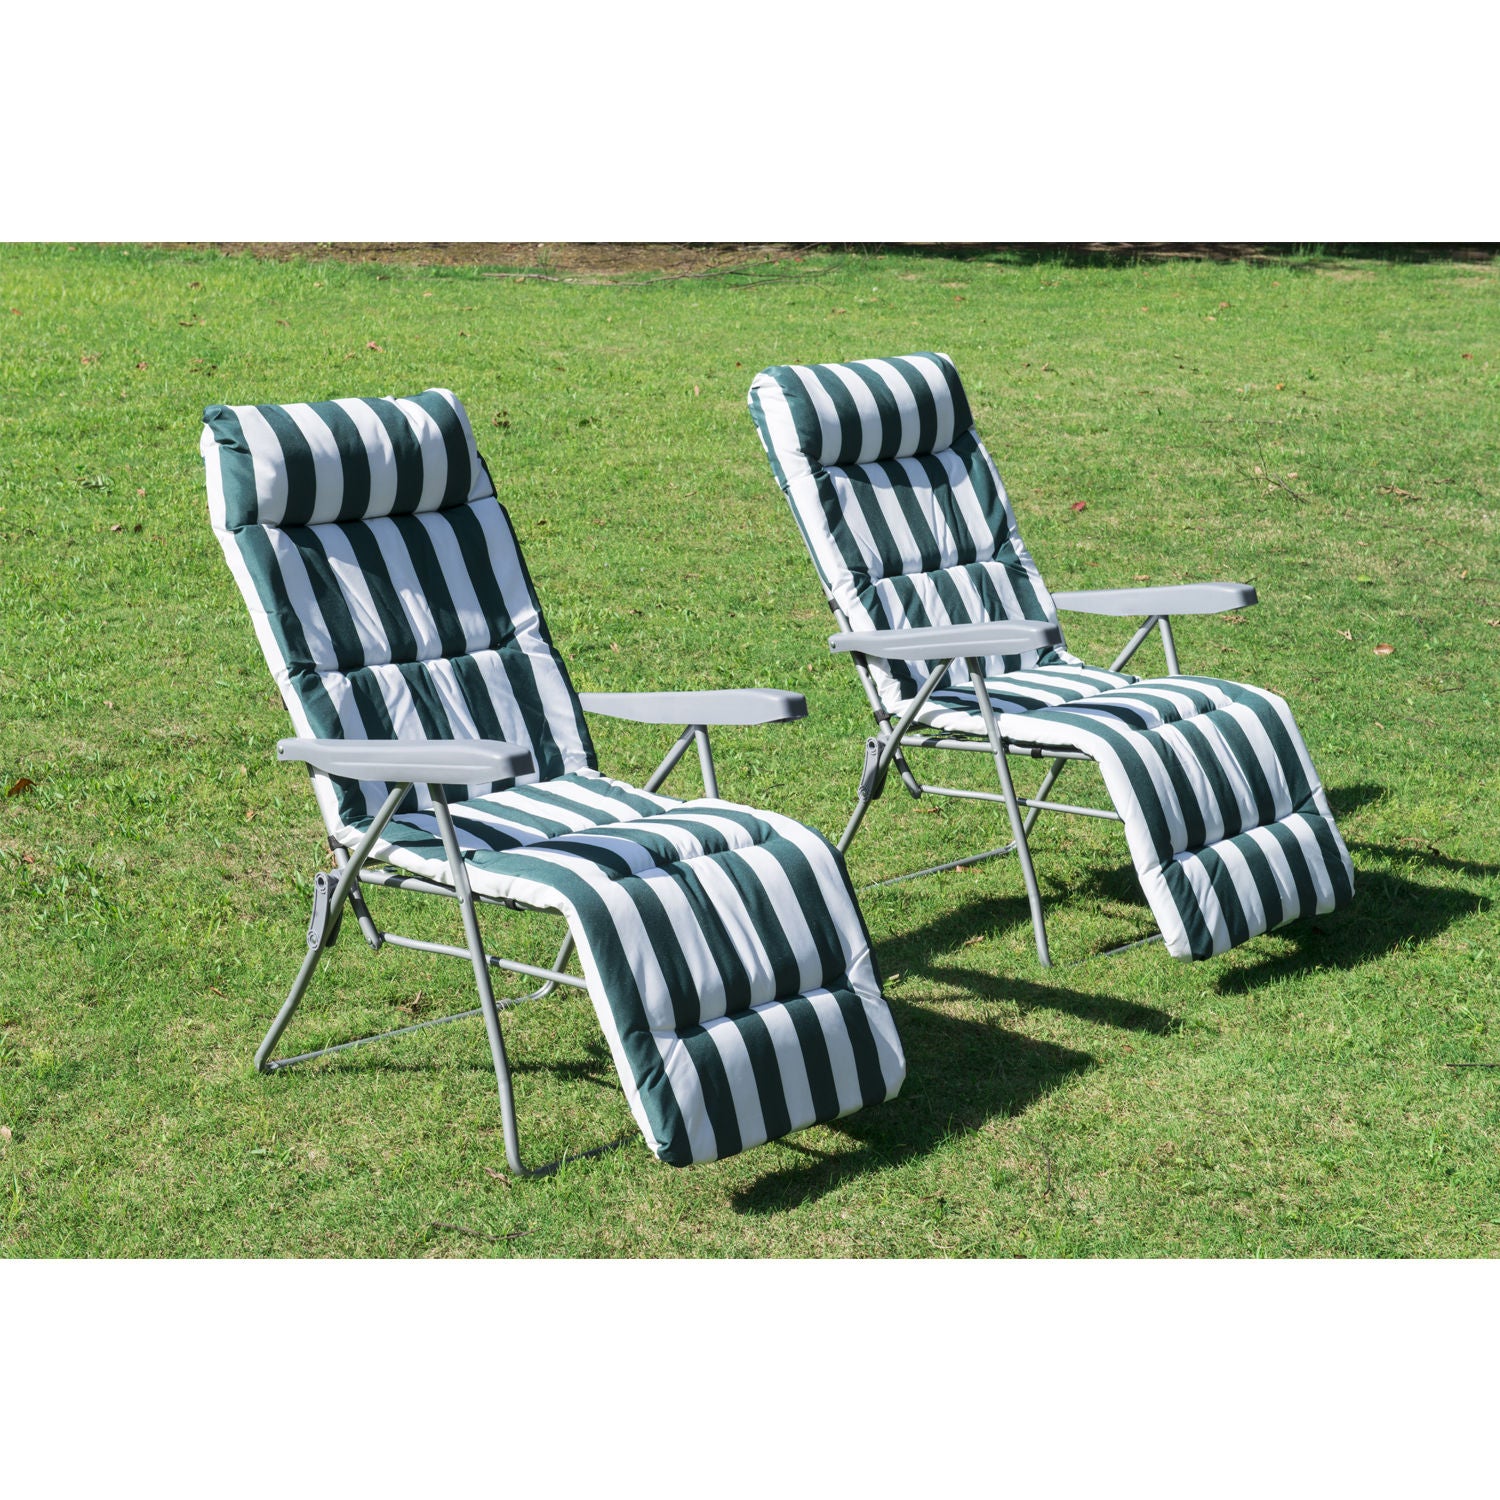 Chaises de jardin Nancy's Cary - Chaise longue - Lot de 2 - Pliable - 5 positions - Réglable - Vert - Blanc - 60 x 75 x 104 cm